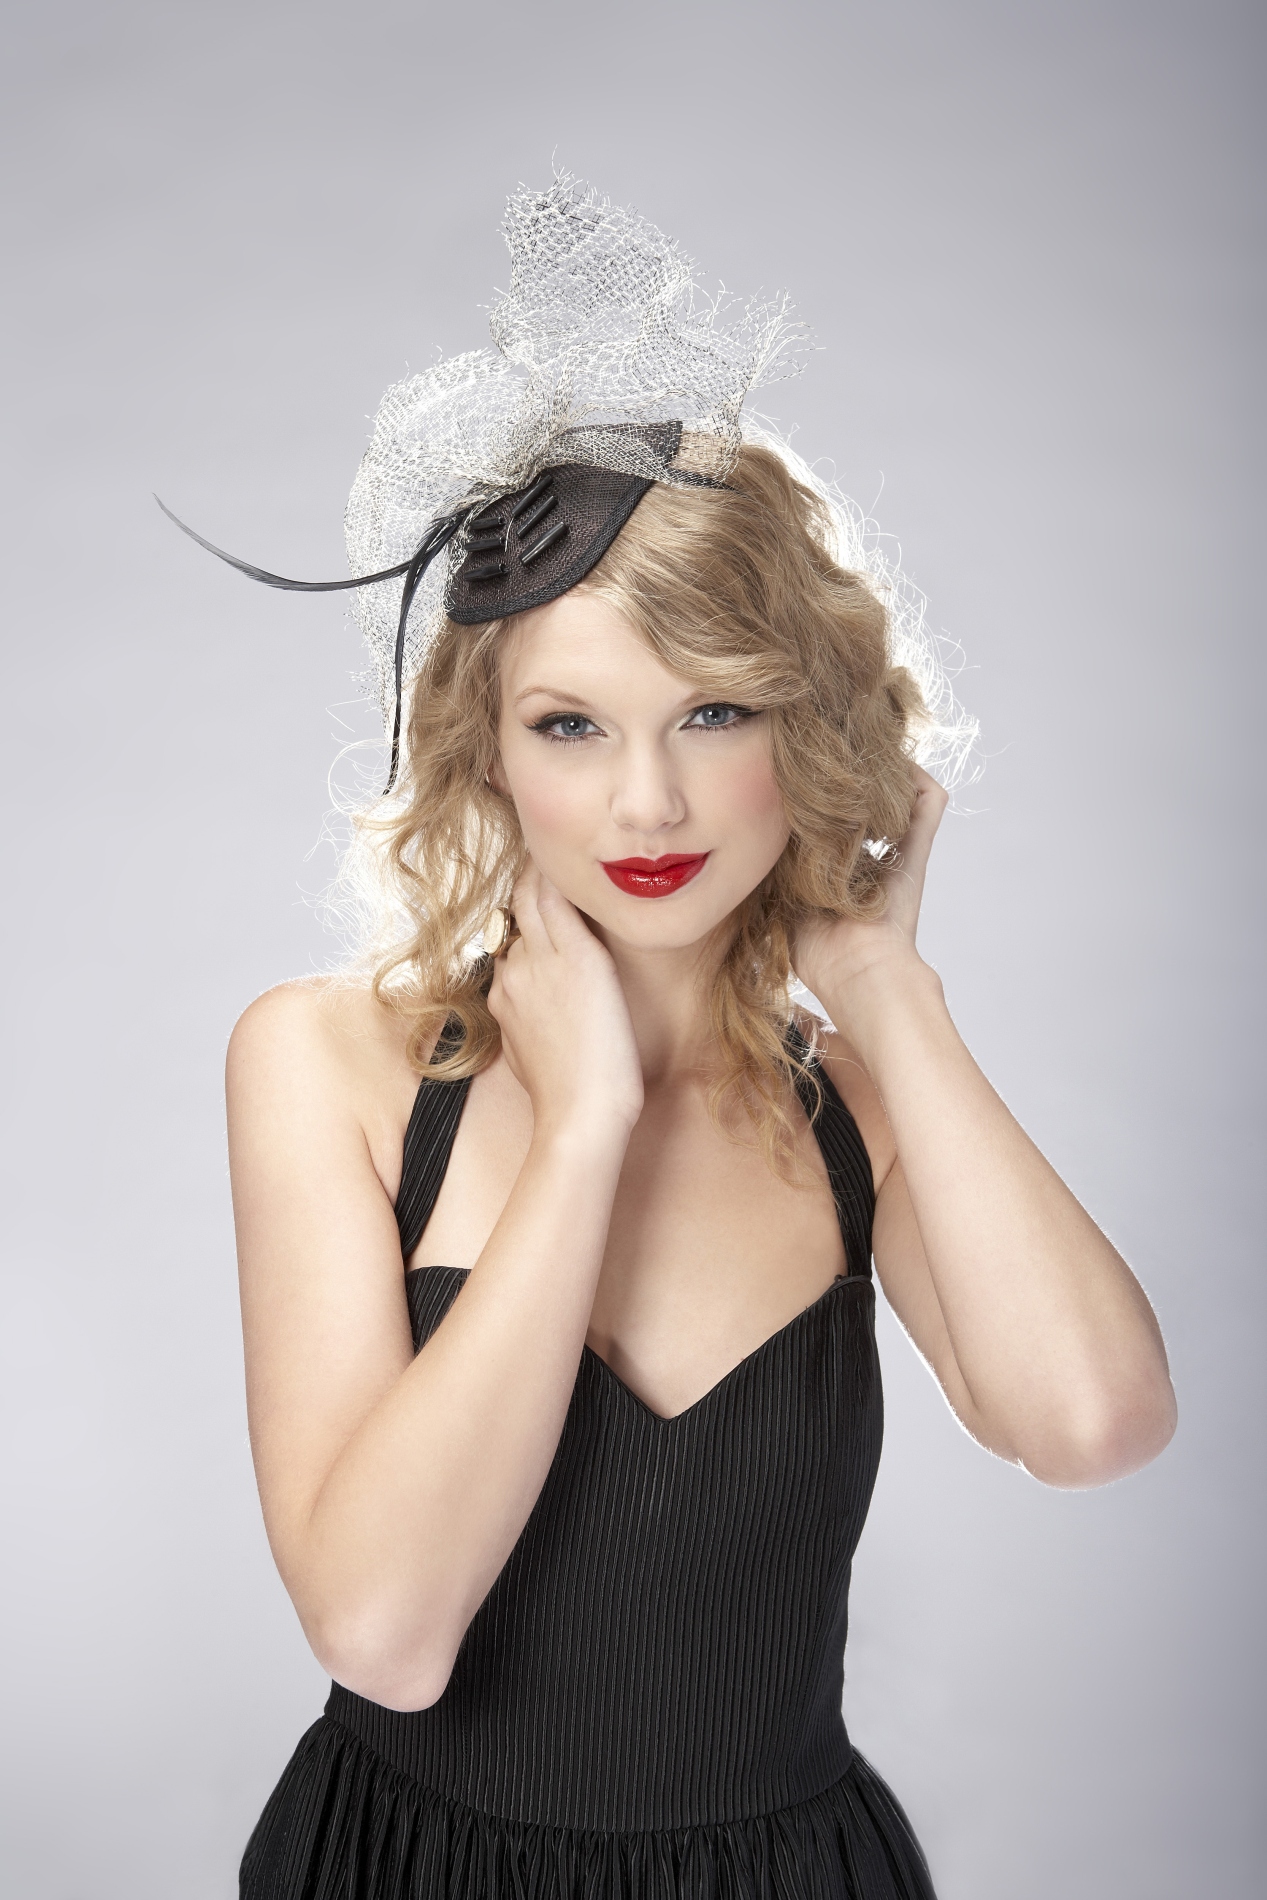 People 1267x1900 Taylor Swift women singer blonde blue eyes long hair smiling lipstick